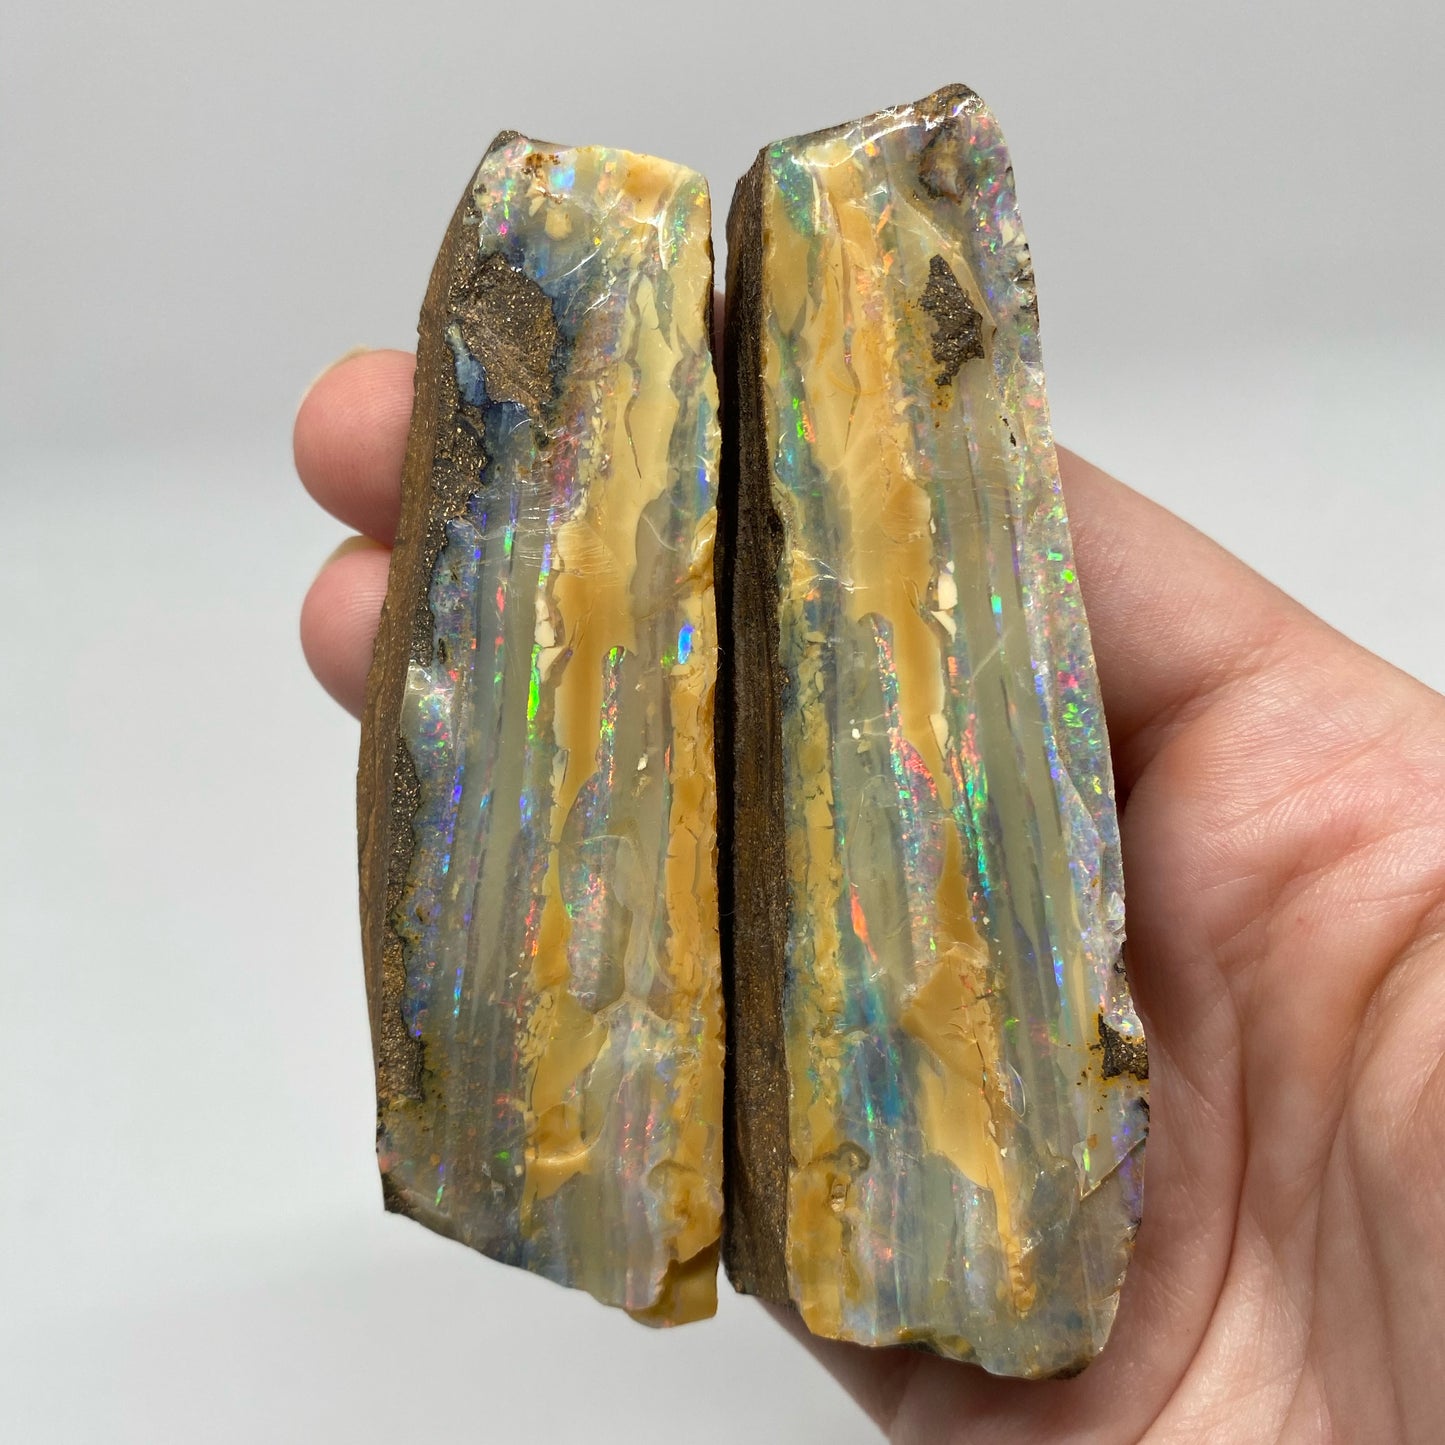 635 Ct raw boulder opal split